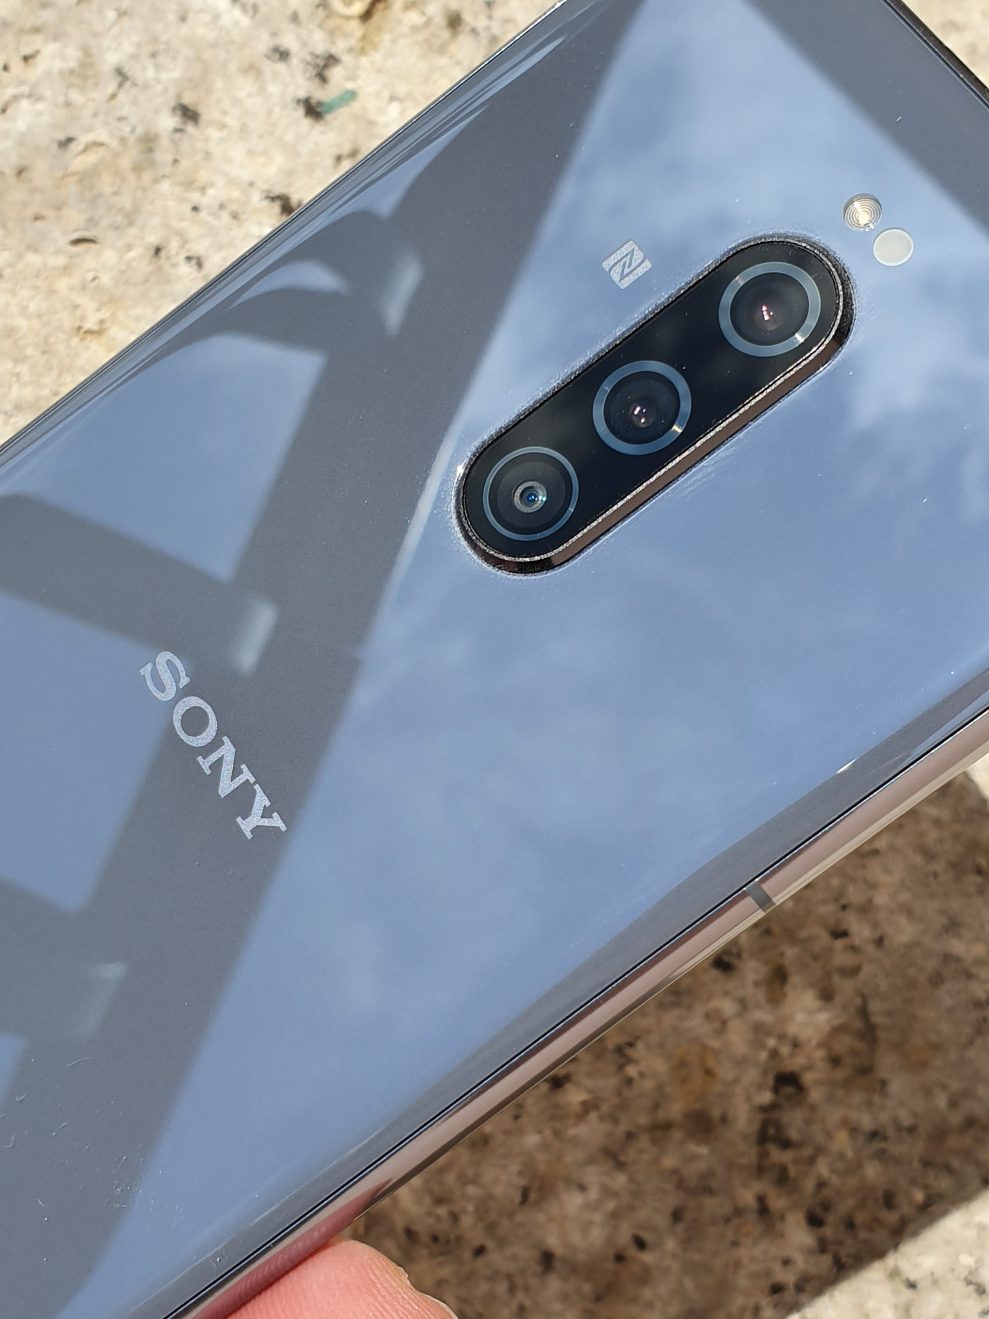 Det finns tre objektiv på baksidan av Sony Xperia 1: 12 Mp/f1,6 som huvudkamera och 52 mm 12 Mp f/2,4 tele plus 16 mm 12 Mp/f2,4 ultravidvinkel. Foto: Peter Gotschalk